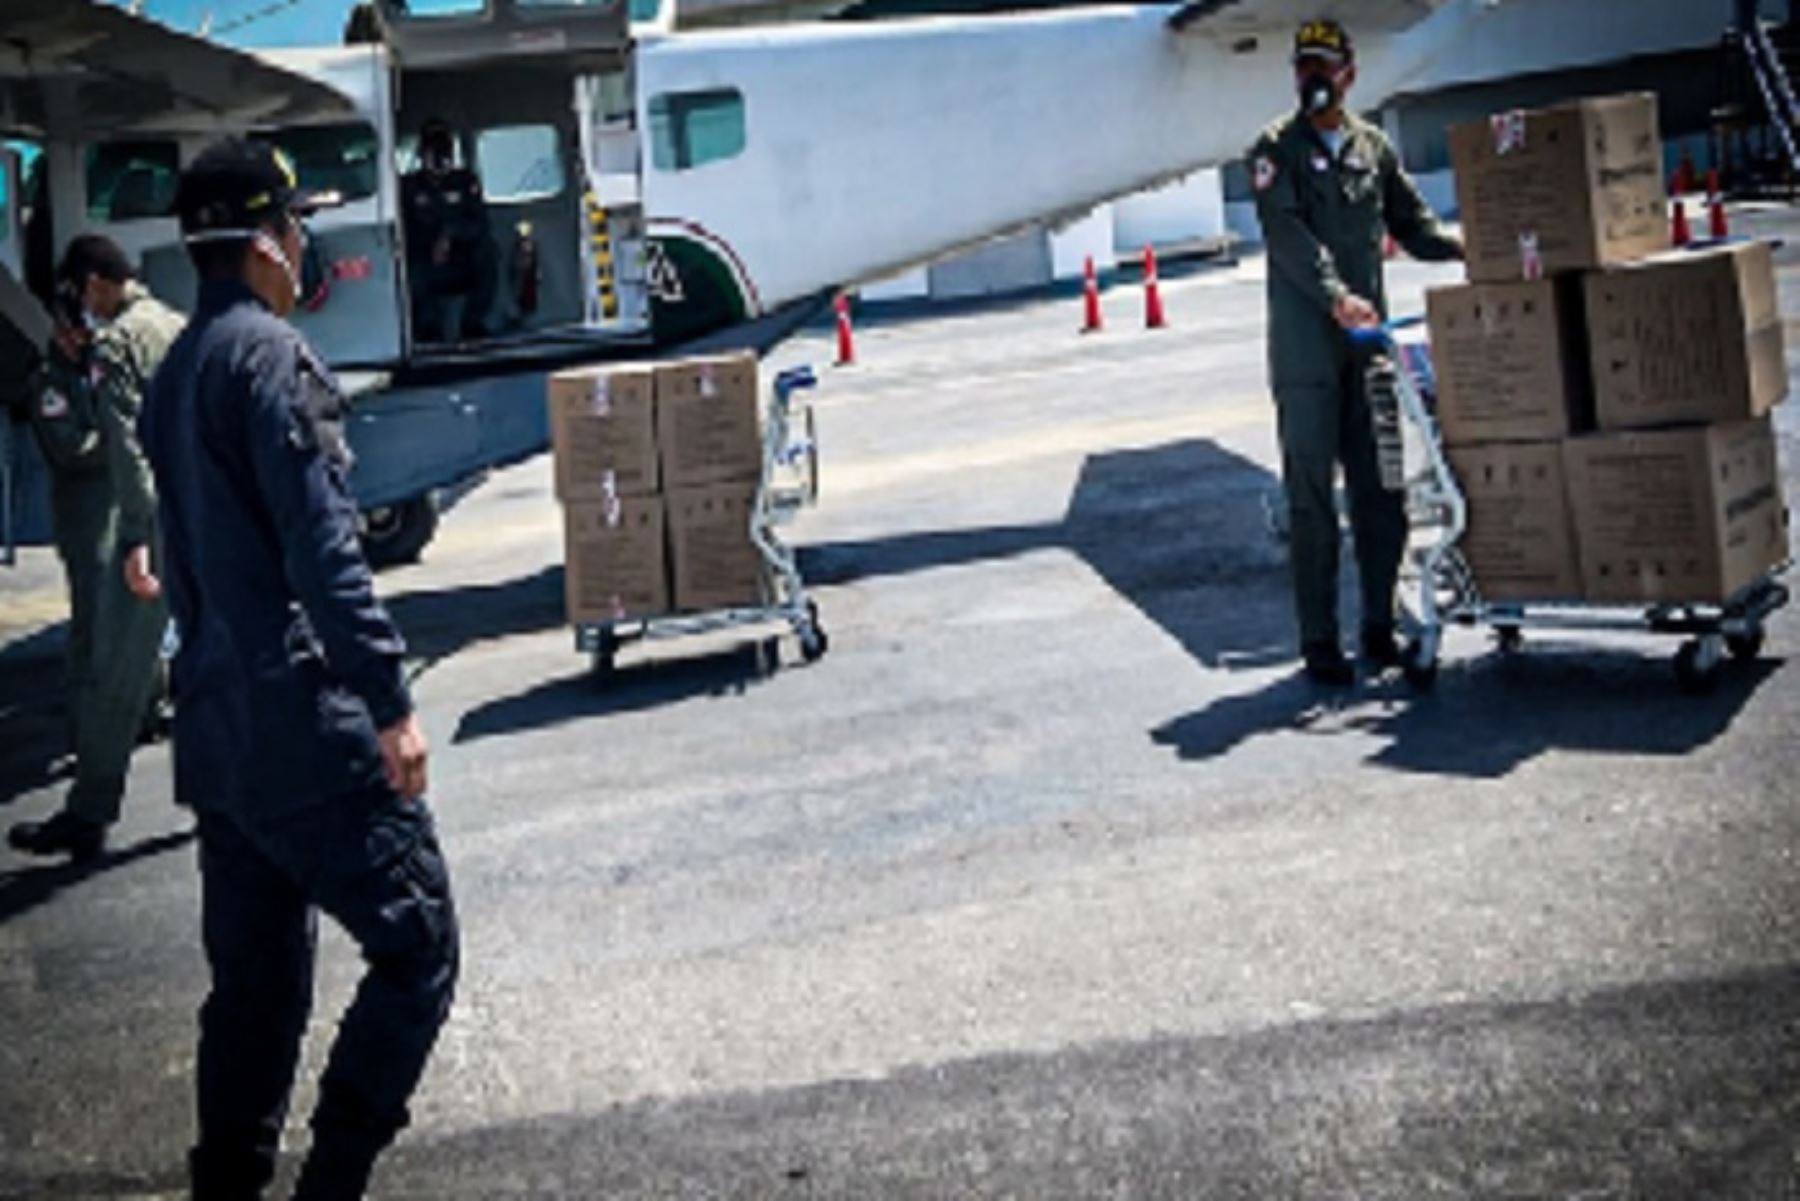 Los equipos de protección personal fueron distribuidos por vía aérea desde el pasado 12 de mayo a las regiones policiales con alta demanda y riesgo de desabastecimiento.